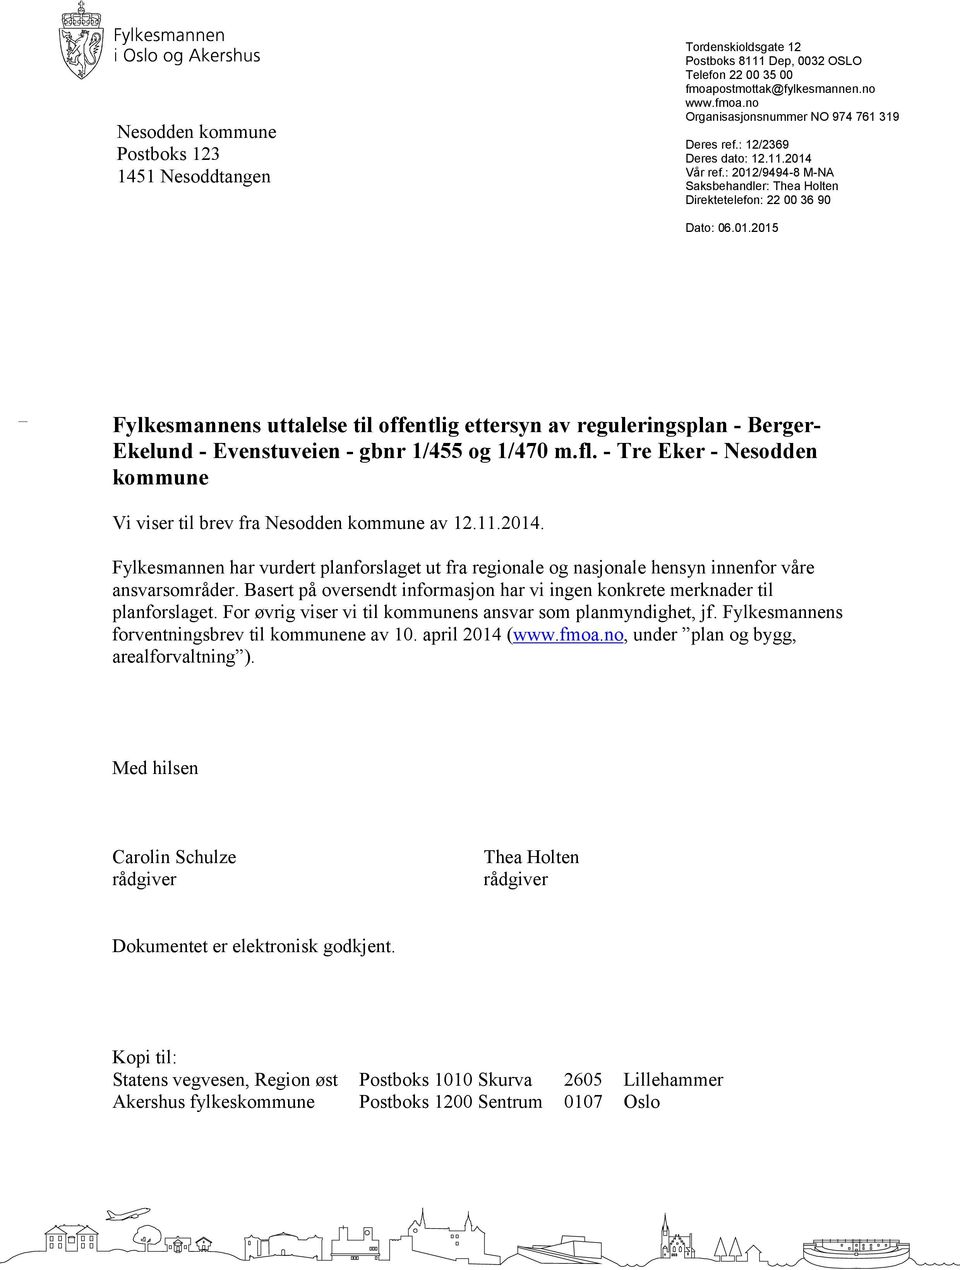 fl. - Tre Eker - Nesodden kommune Vi viser til brev fra Nesodden kommune av 12.11.2014. Fylkesmannen har vurdert planforslaget ut fra regionale og nasjonale hensyn innenfor våre ansvarsområder.